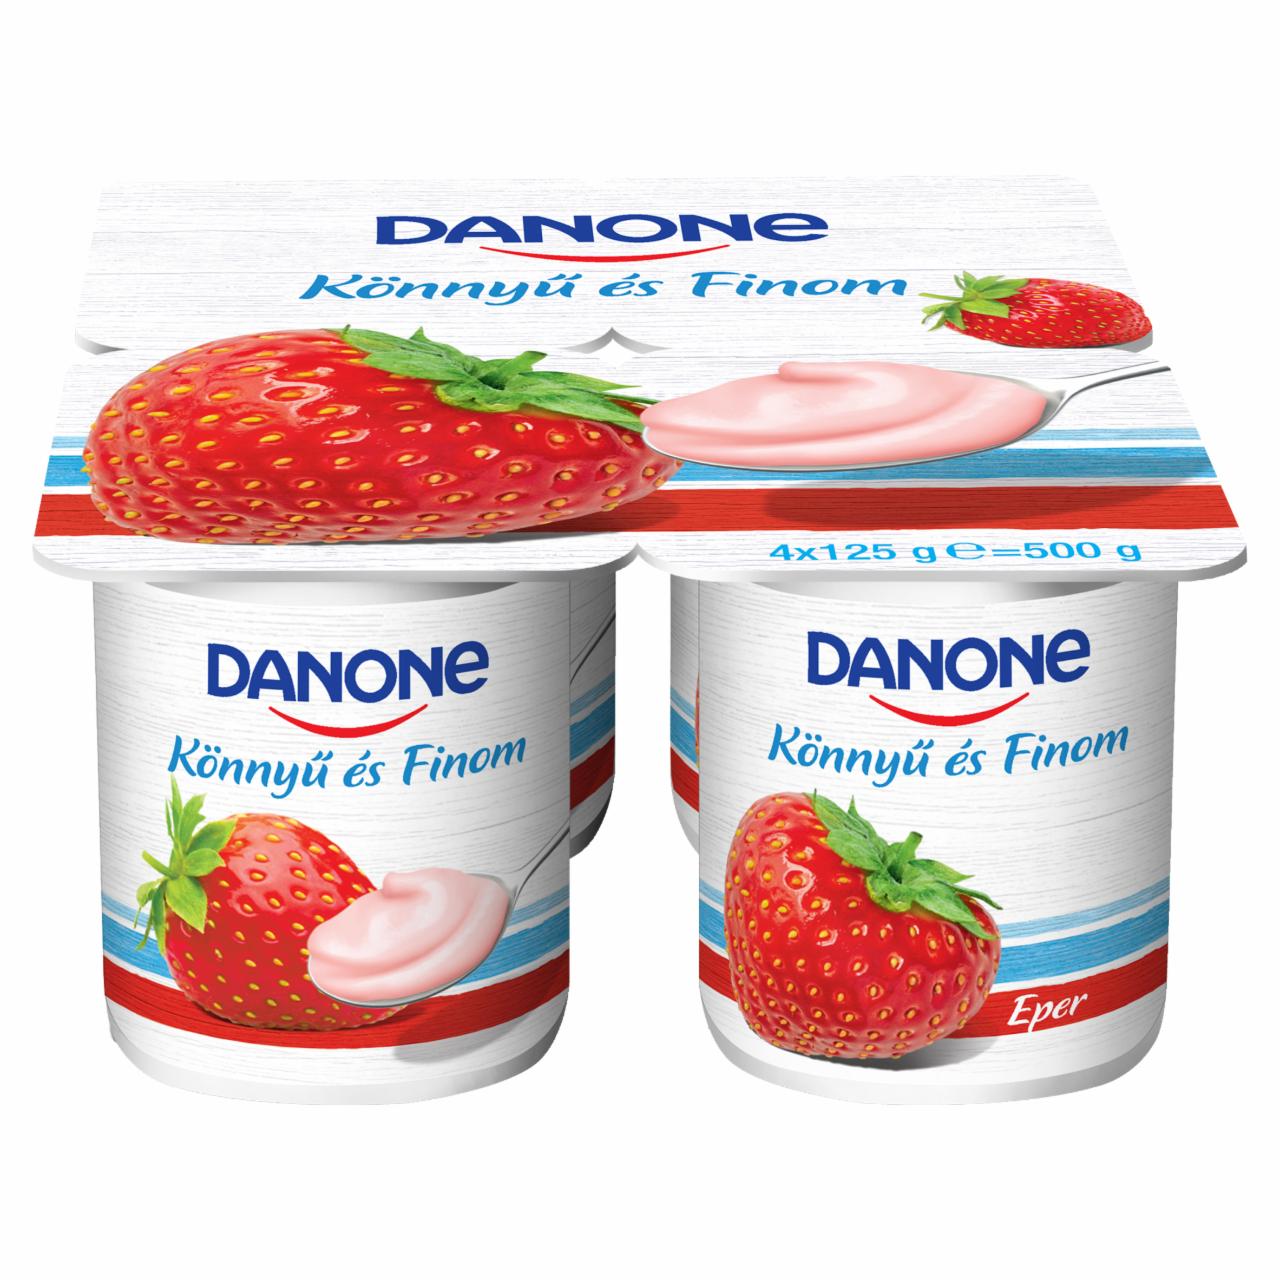 Képek - Danone eperízű, élőflórás, zsírszegény joghurt 4 x 125 g